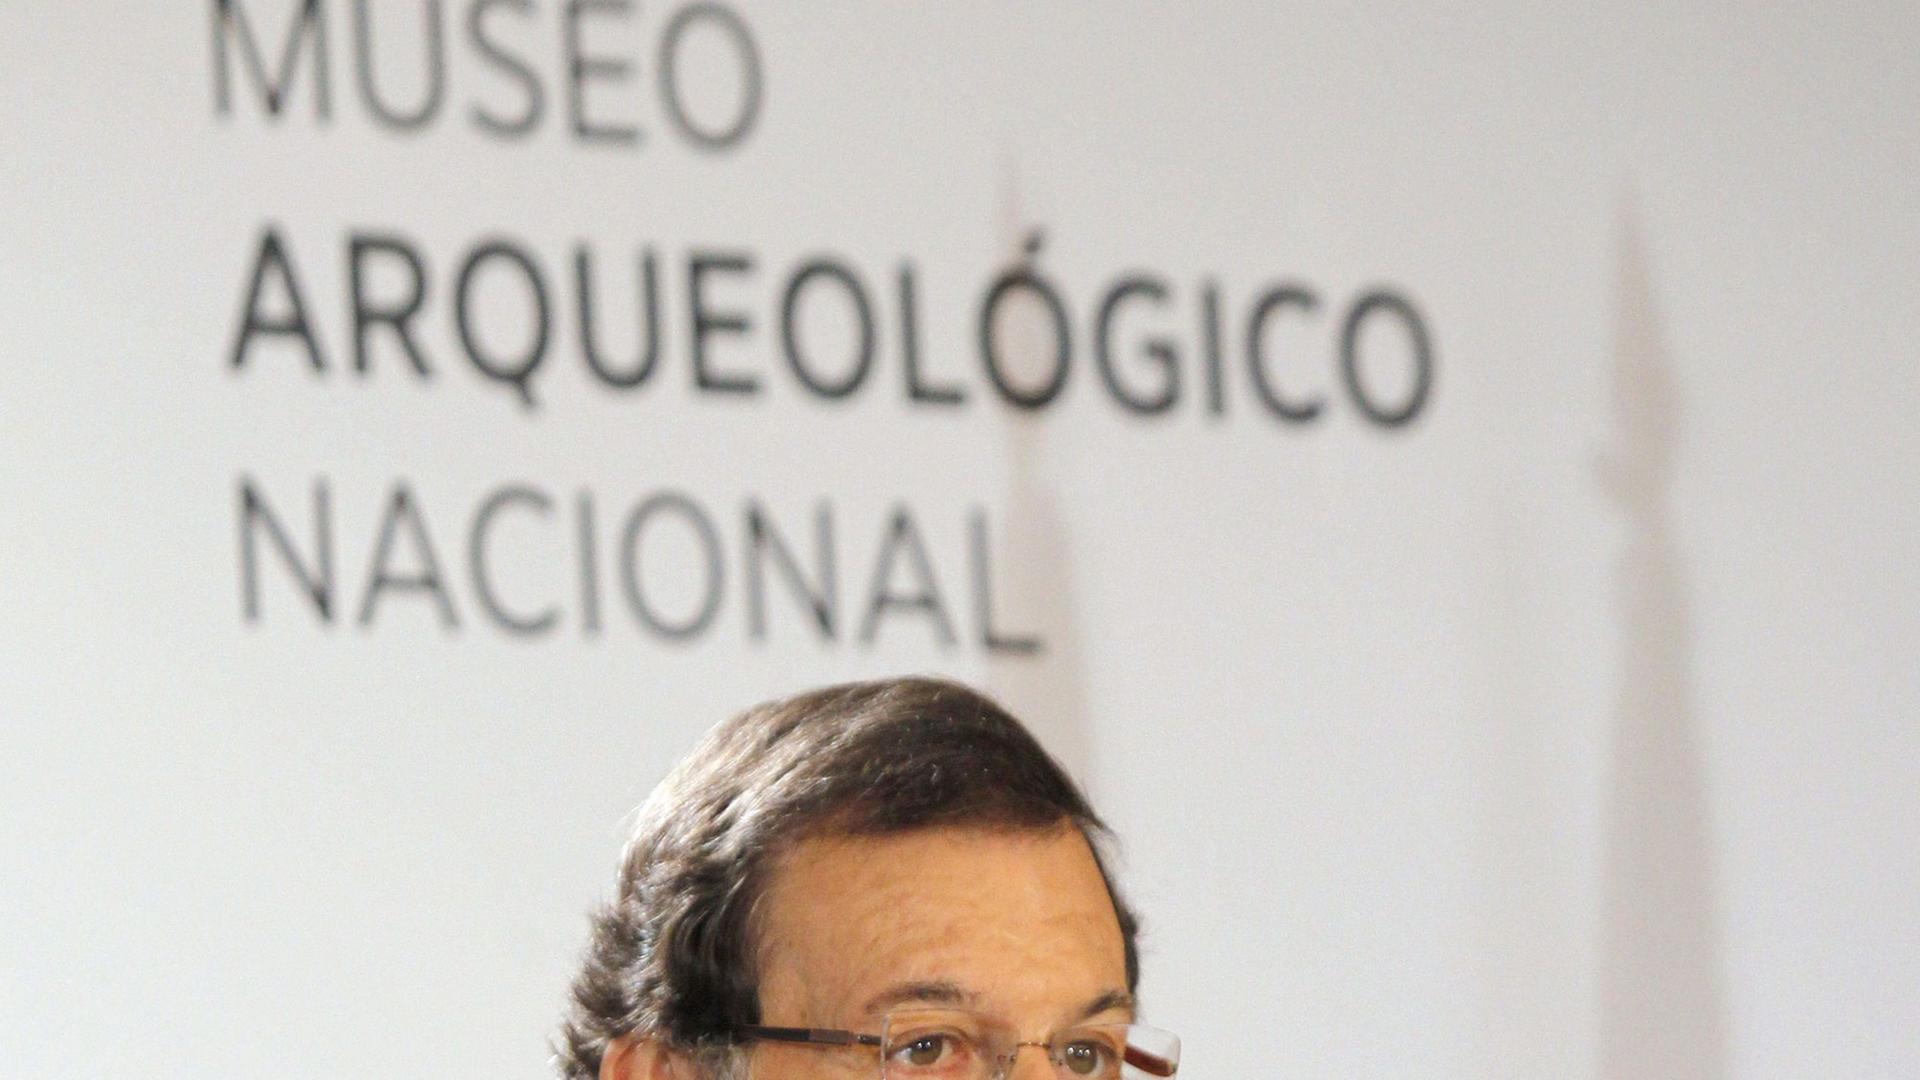 Spaniens Ministerpräsident Mariano Rajoy spricht in ein Mikrofon bei der Eröffnung nach der Renovierung des Nationalen Archäologiemuseums in Madrid.